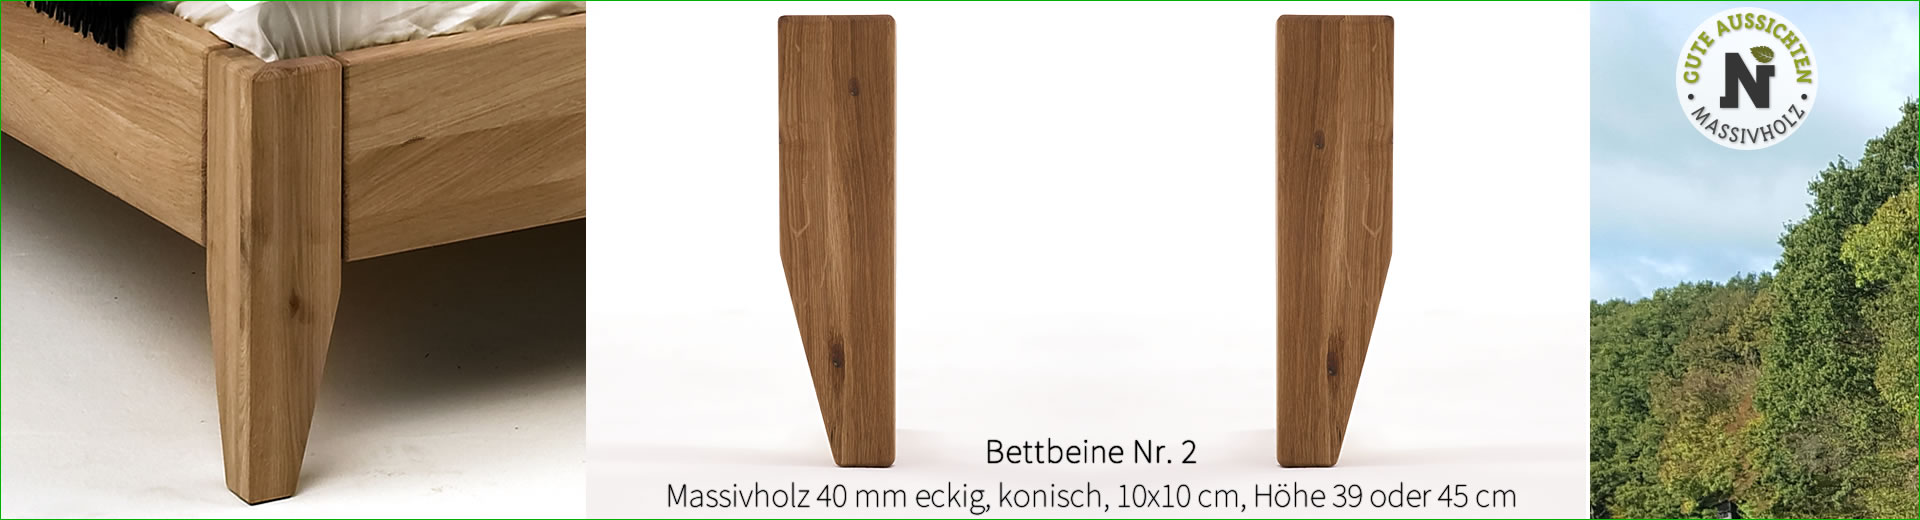 Bettbeine Nr. 2, Massivholz 40 mm eckig, konisch 10x10 cm, Höhe 39 cm, Wildeiche